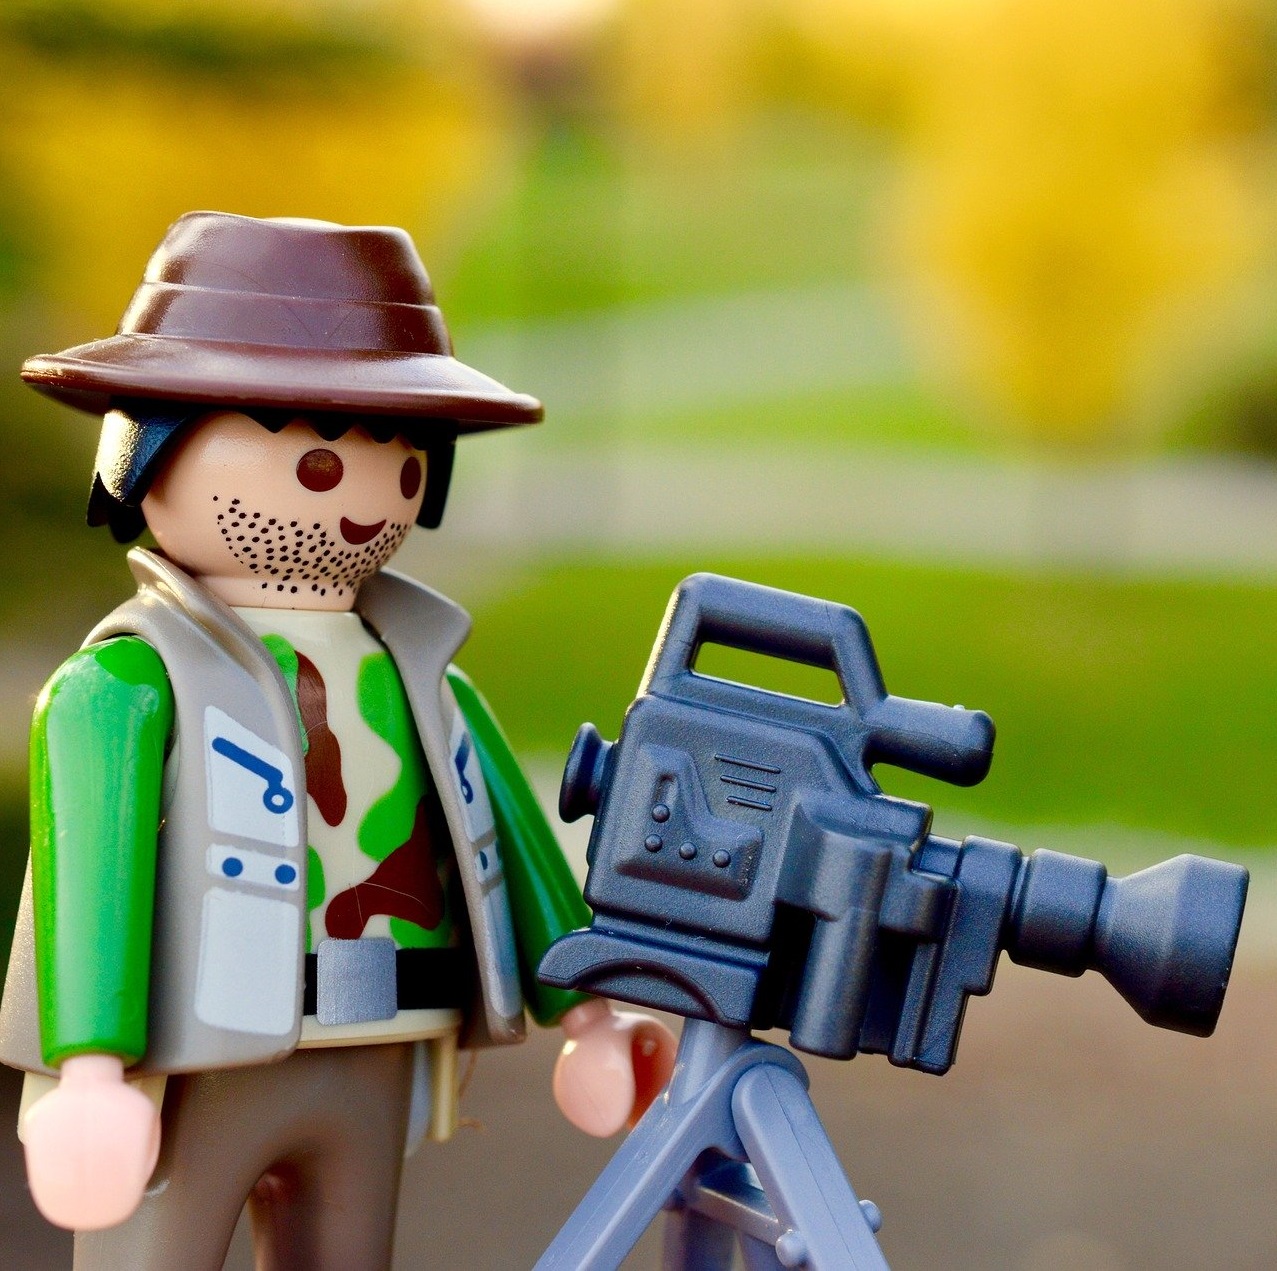 Lego réalisateur avec sa caméra